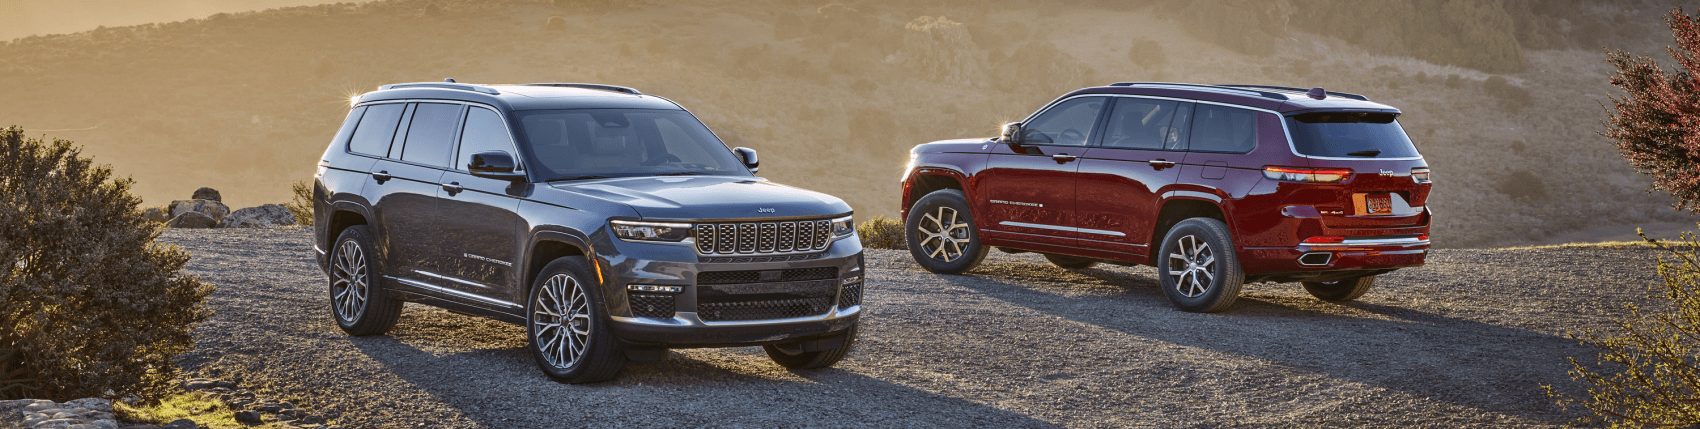 Jeep Grand Cherokee vs Ford Explorer Casper, WY